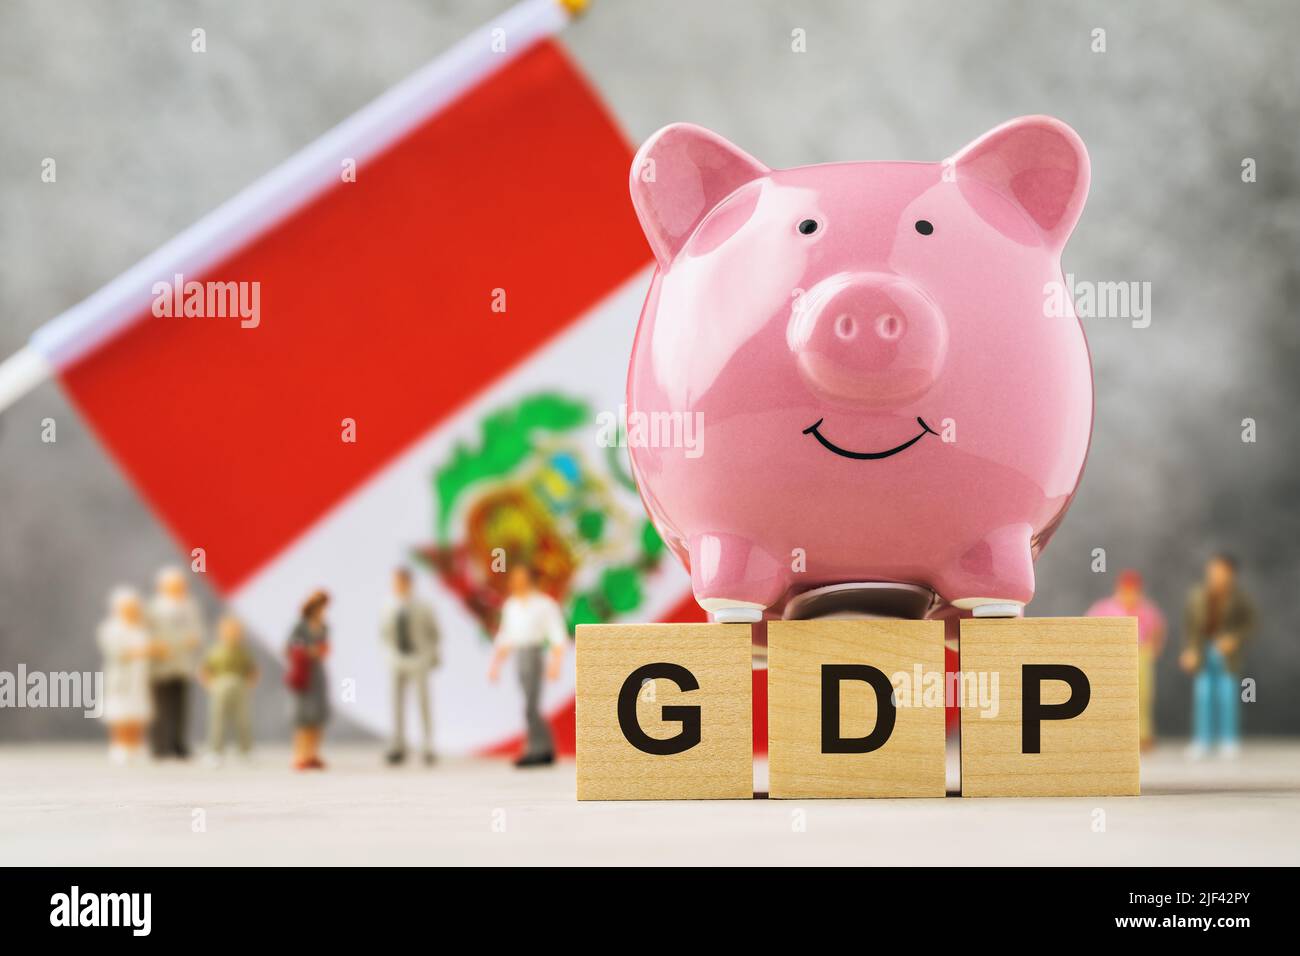 Banco de cerdos, cubos de madera con texto, gente de juguete de plástico y una bandera sobre un fondo abstracto, un concepto sobre el tema del PIB del Perú Foto de stock